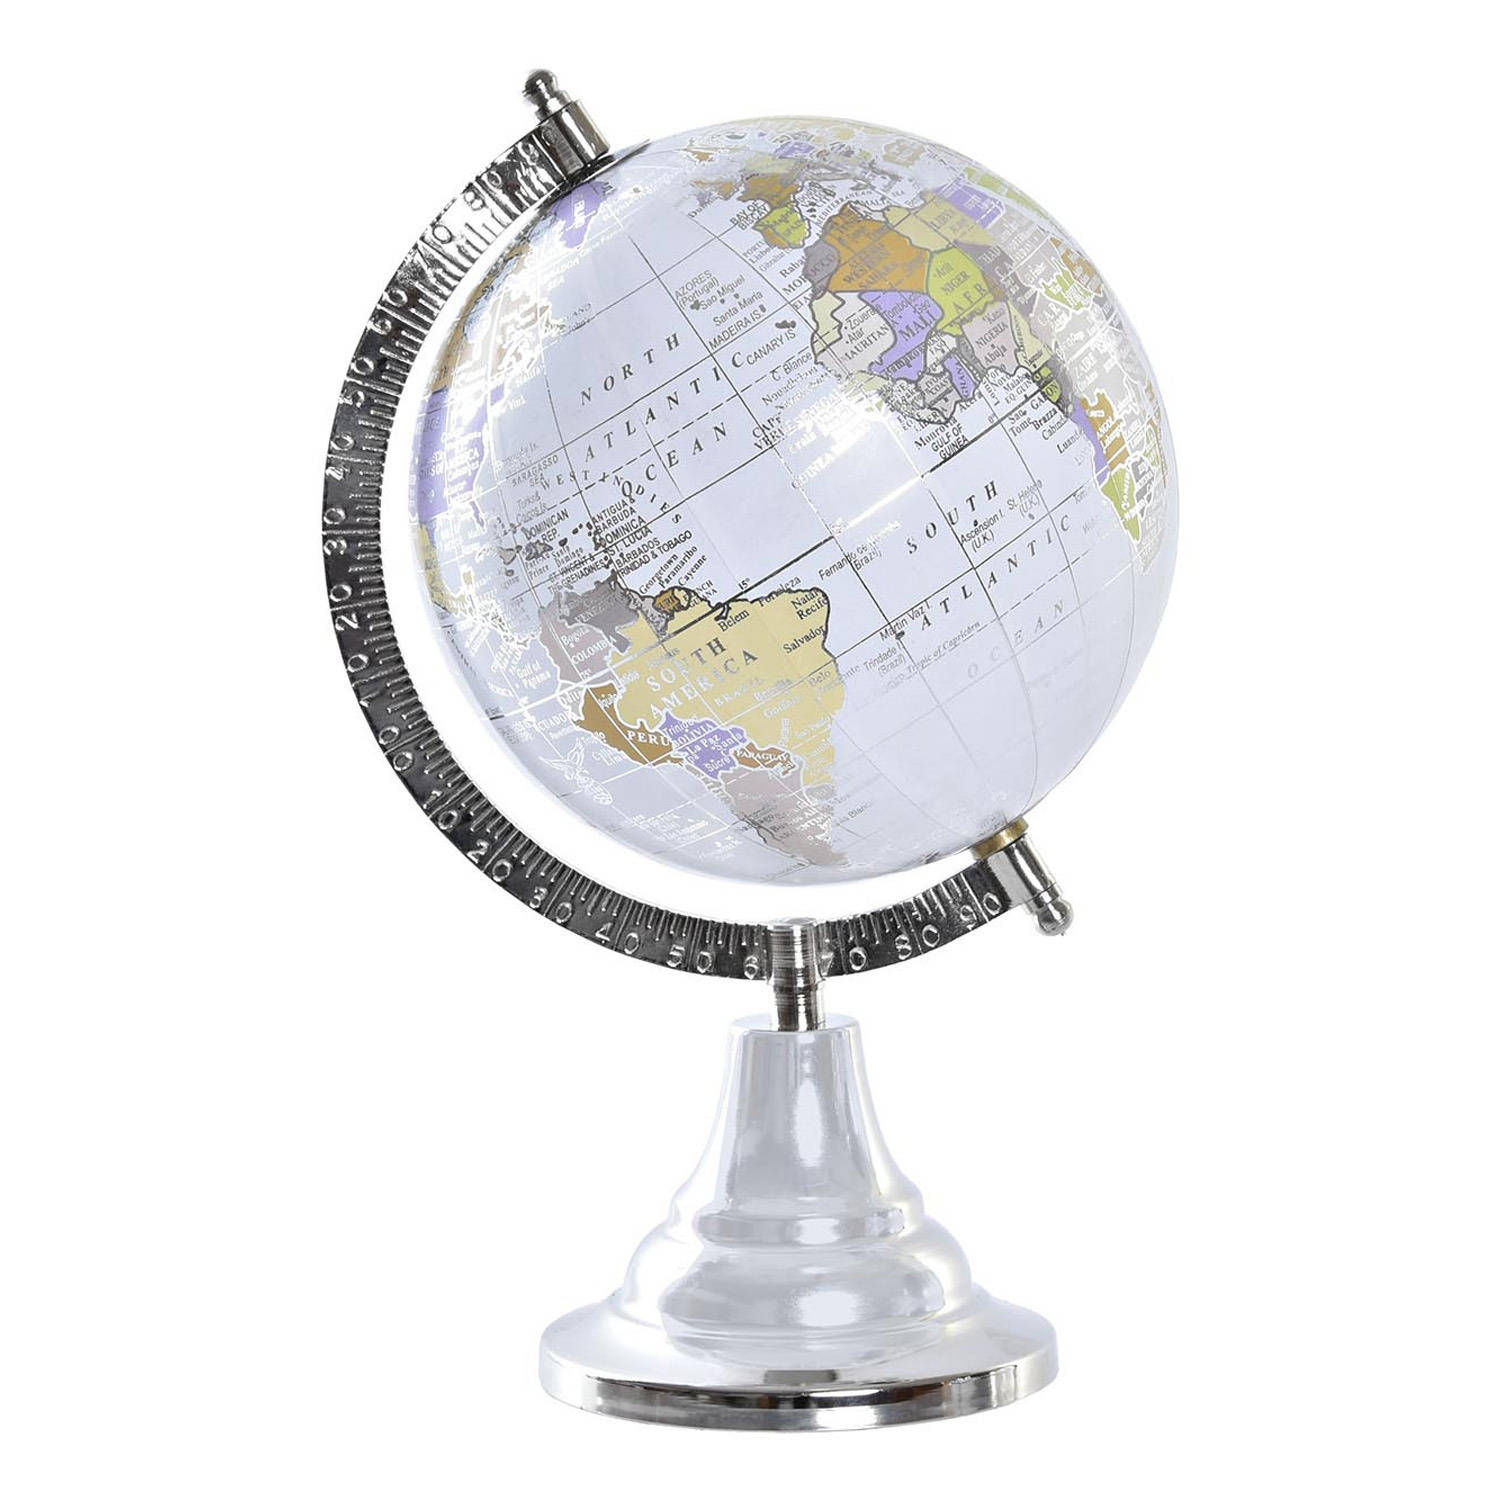 Items Deco Wereldbol-globe op voet kunststof grijs-zilver home decoratie artikel D15 x H28 cm Wereld